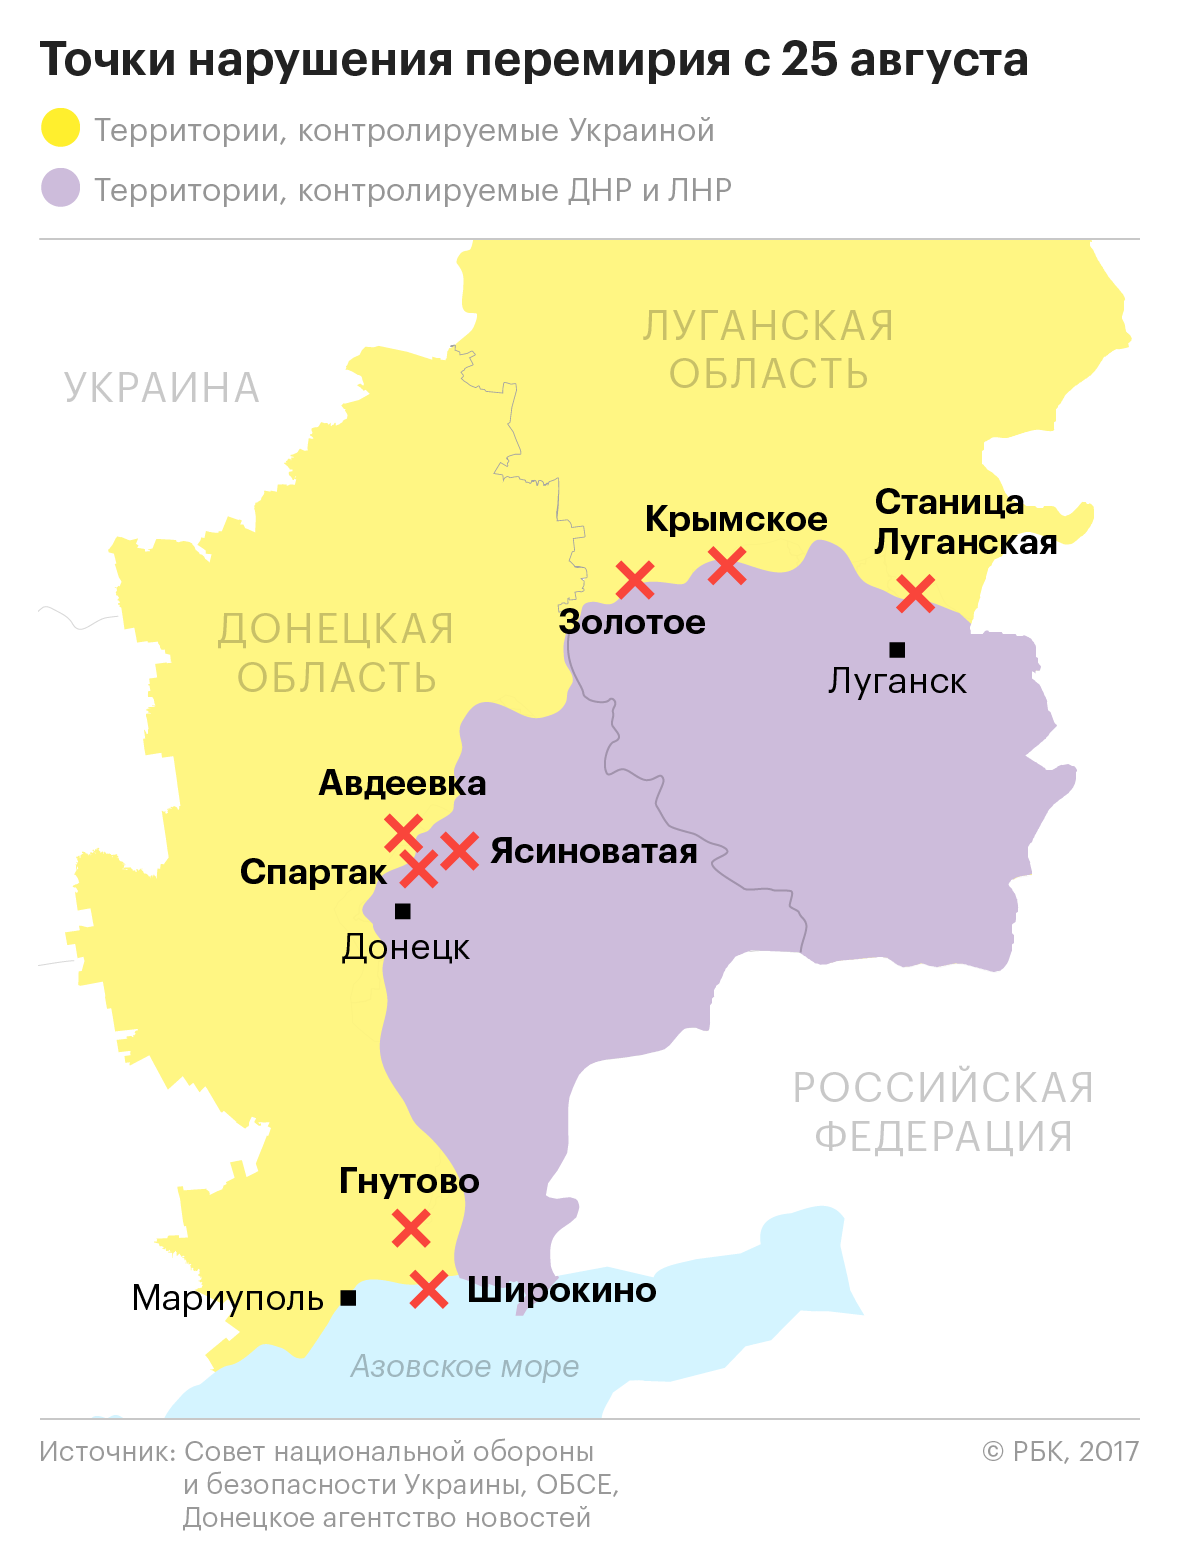 Невозможная тишина: почему не соблюдается перемирие в Донбассе